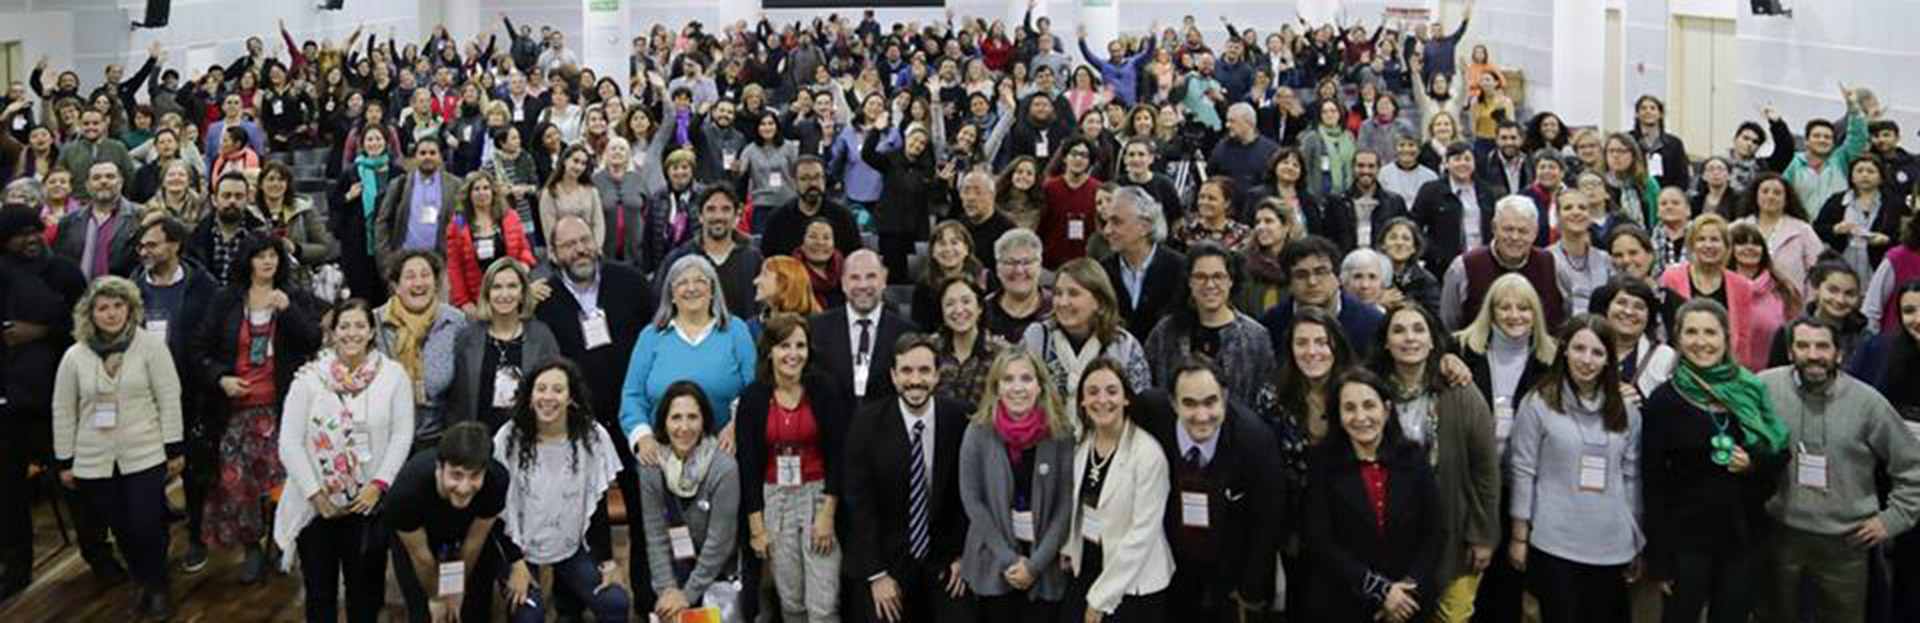 El equipo De UNA en el 21º Seminario Internacional de Aprendizaje y Servicio Solidario